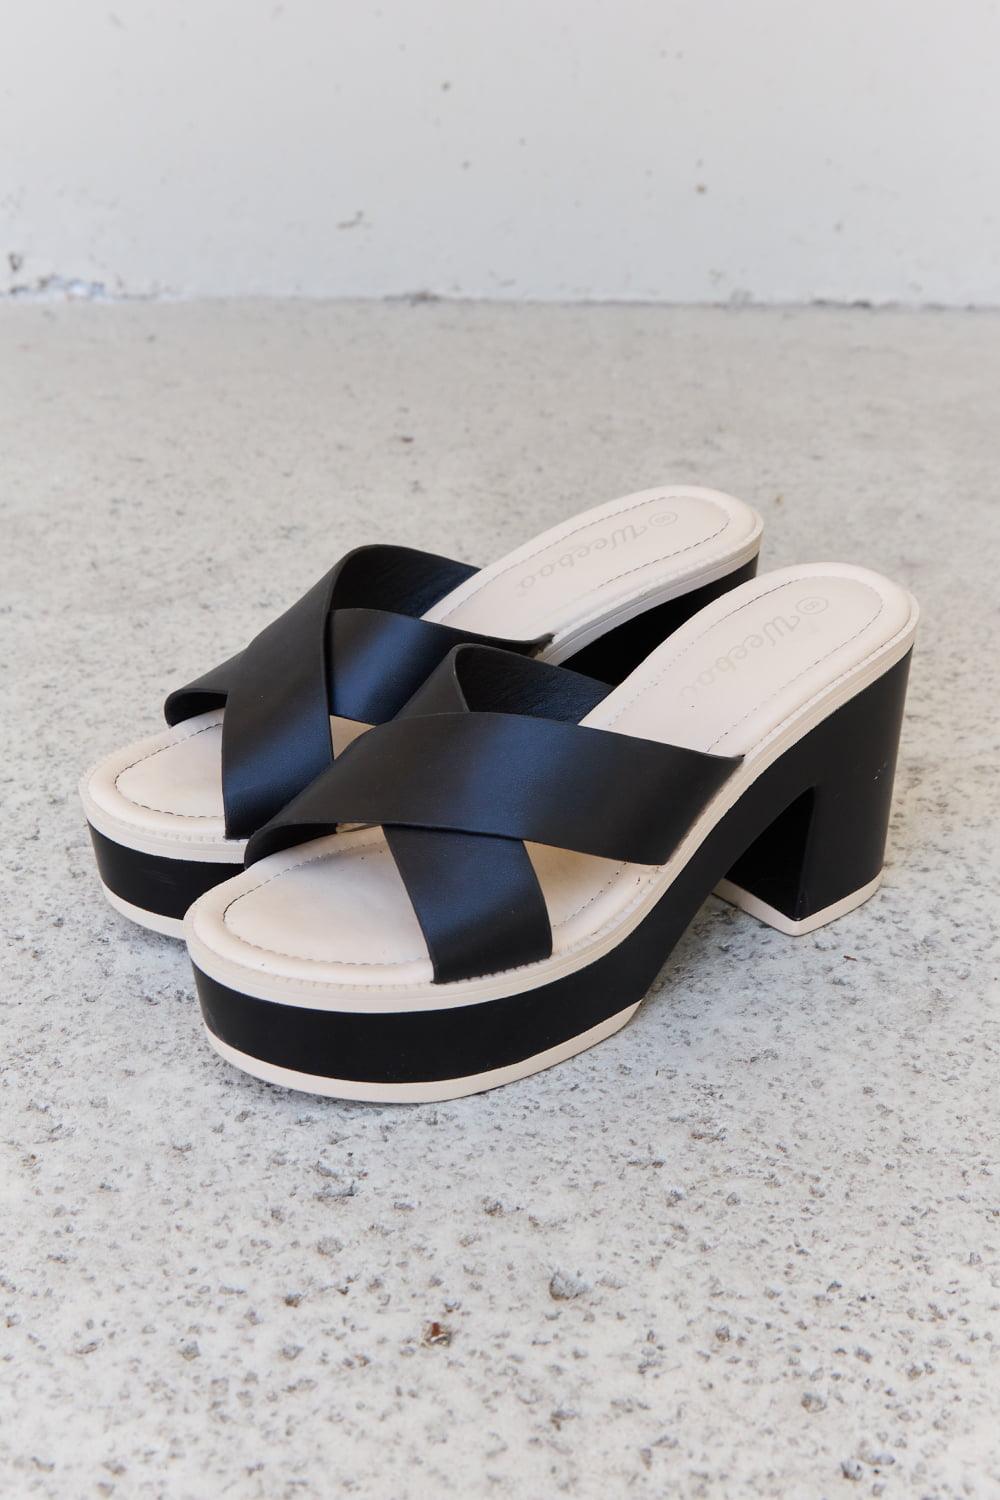 Bona Fide Fashion - Contrast Platform Sandals in Black - Women Fashion - Bona Fide Fashion